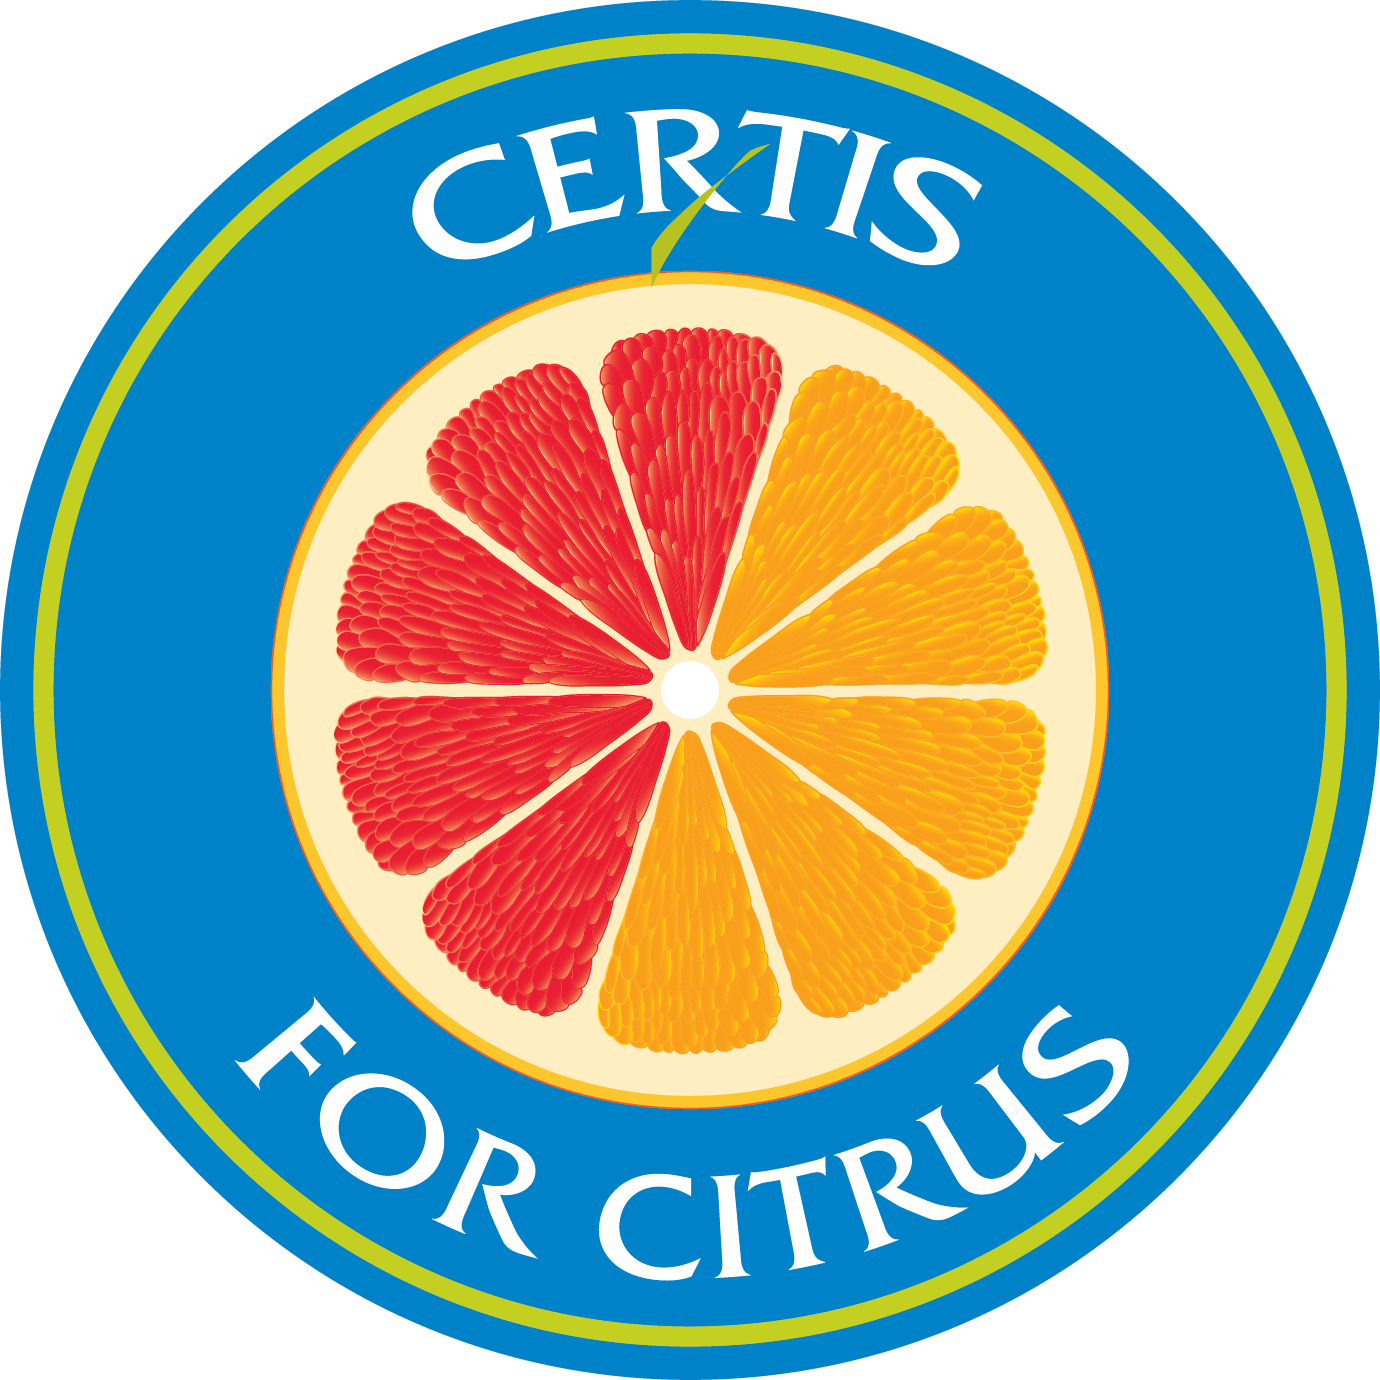 Certis for Citrus